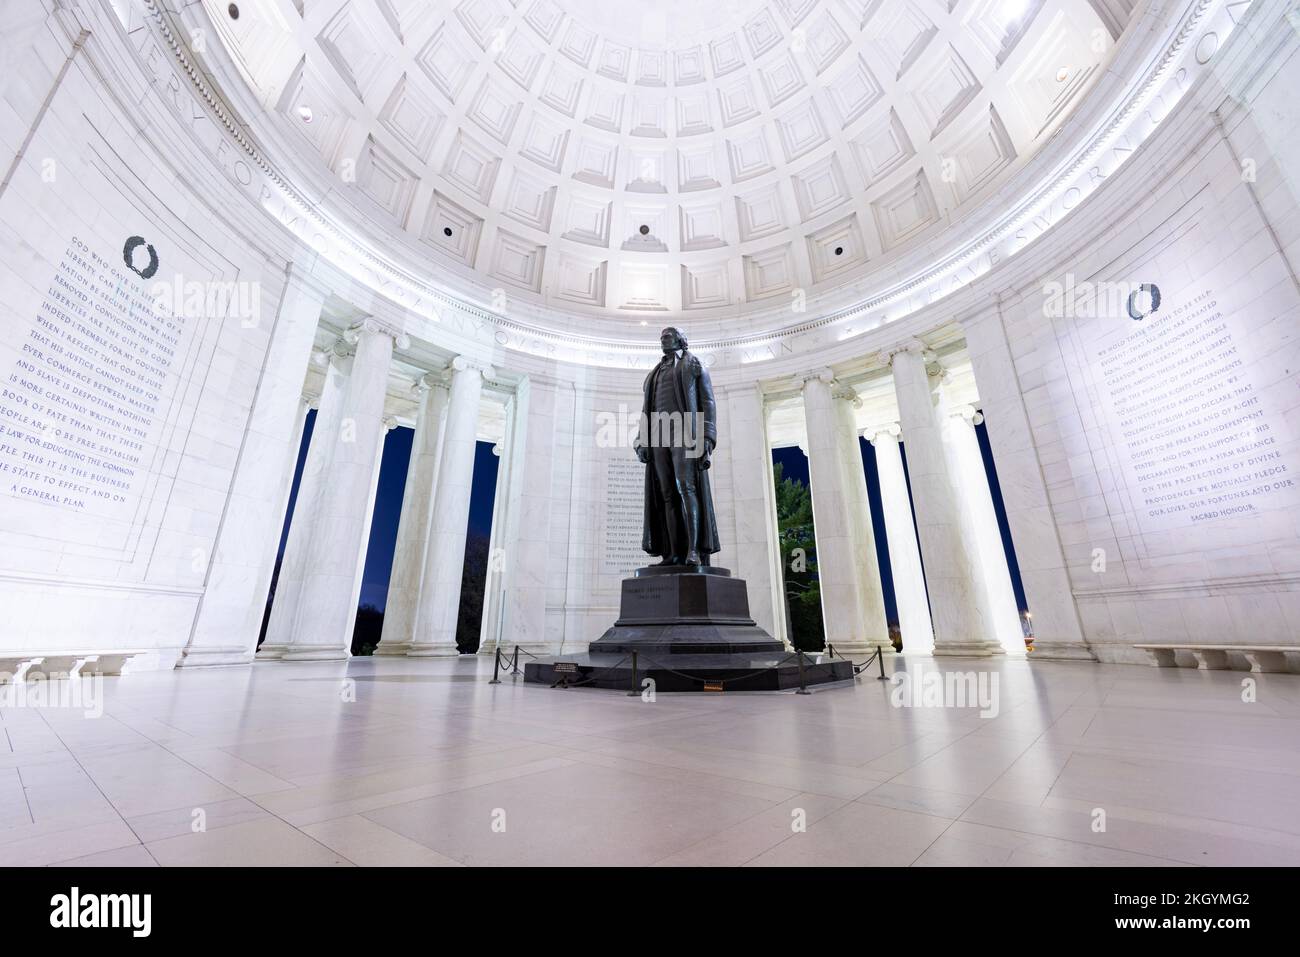 El interior del monumento a Jefferson en Washington, D.C., en una tarde de invierno. Toma ultra gran angular con ángulo bajo sin que nadie sea visible. Foto de stock